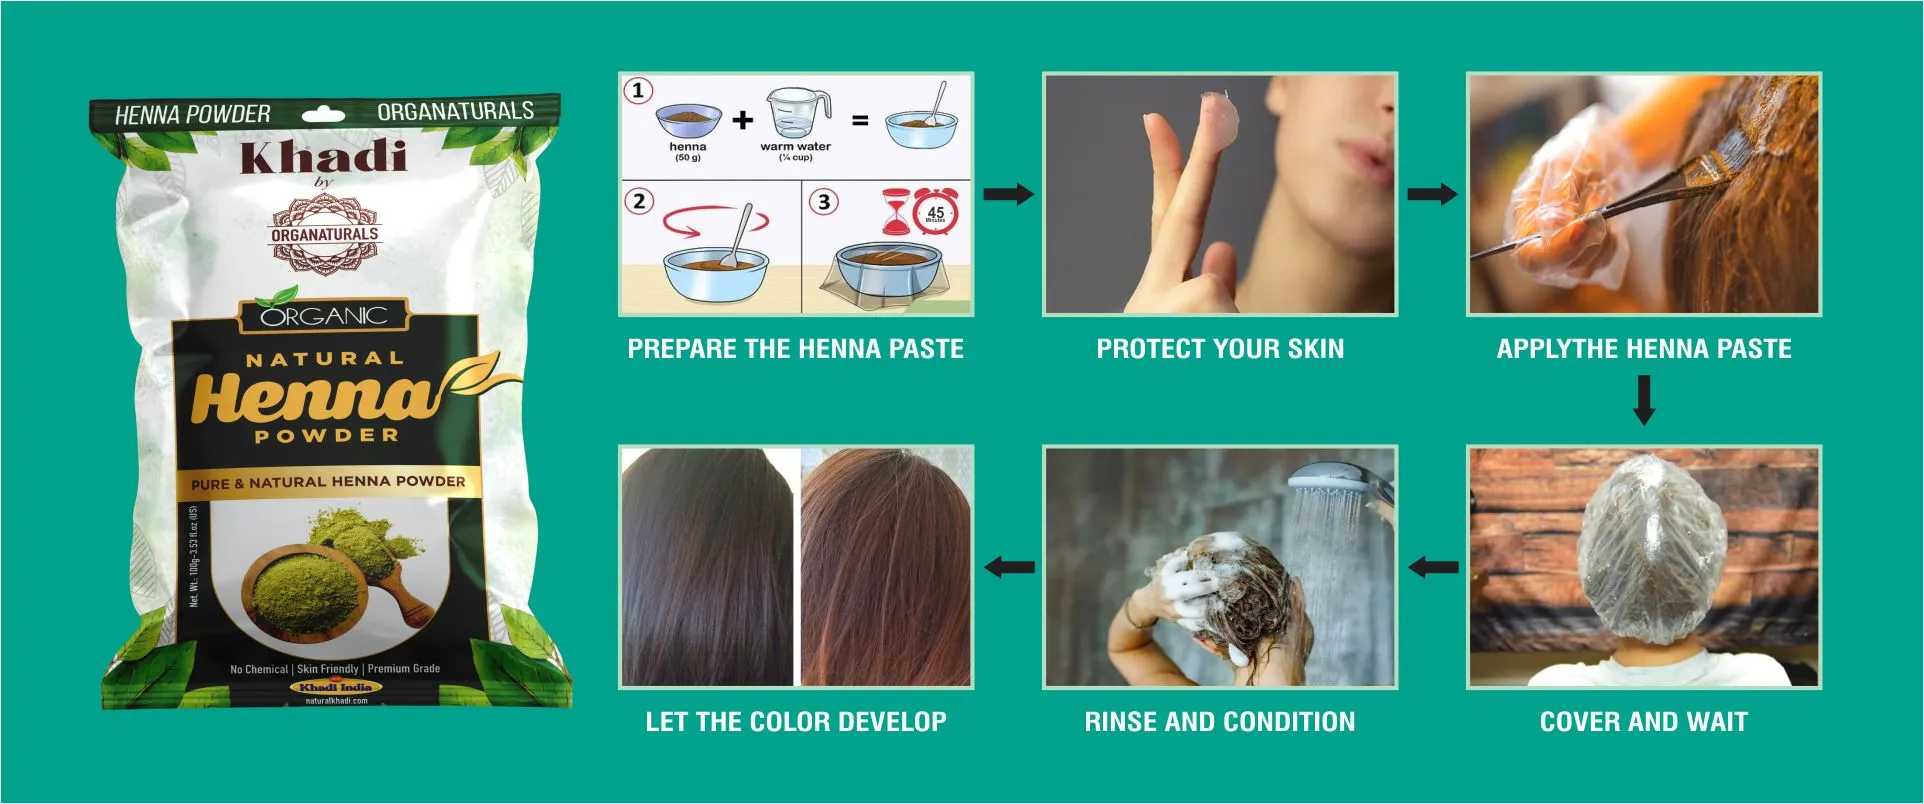 how to use herbal henna powder - www.dkihenna.com